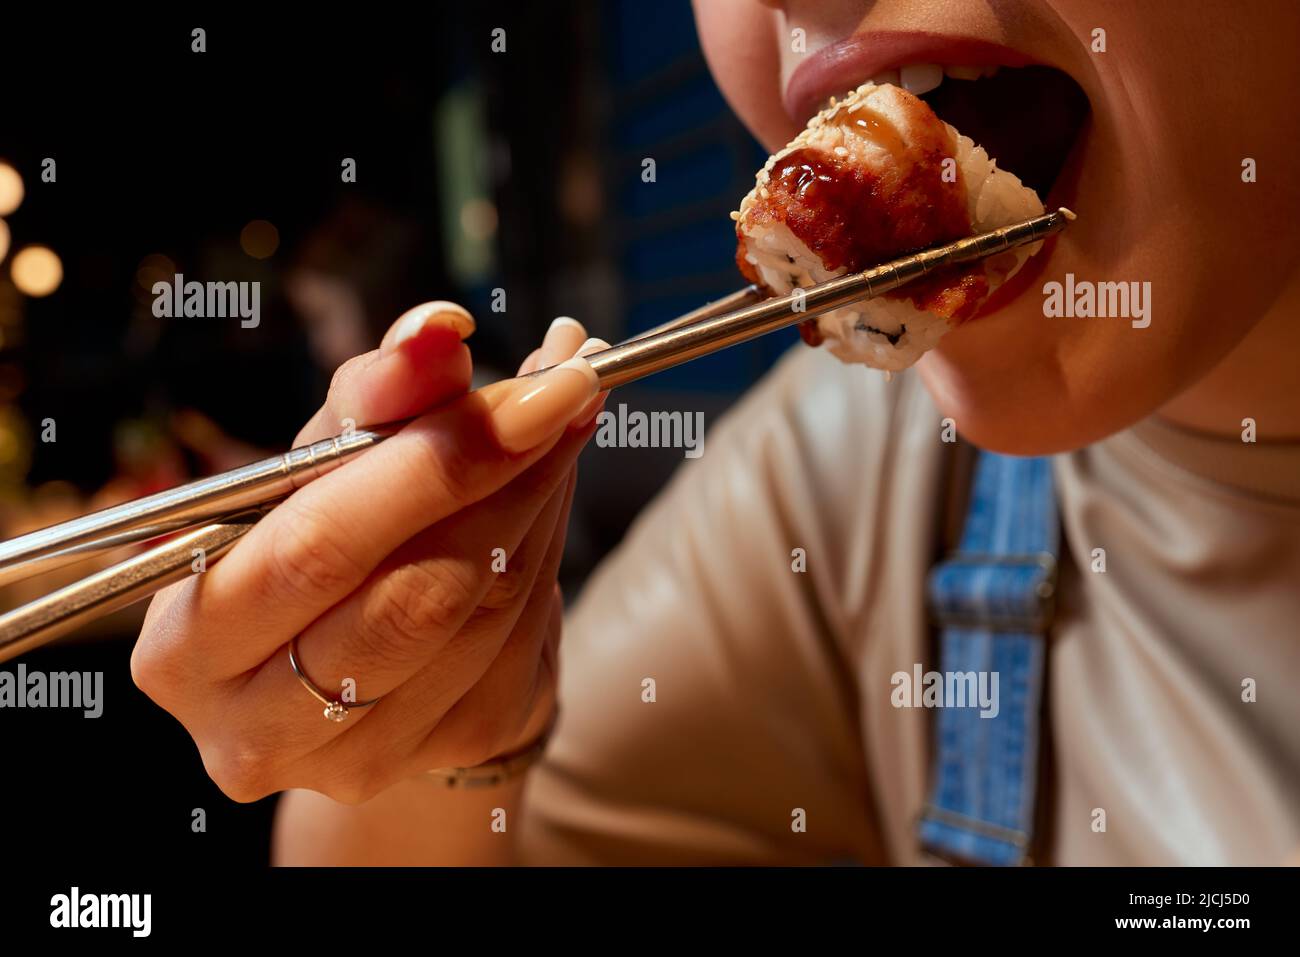 Giovane donna corto 20s indossare abiti casual tenere in mano makizushi sushi rotolo servito su piatto tradizionale cibo giapponese Foto Stock